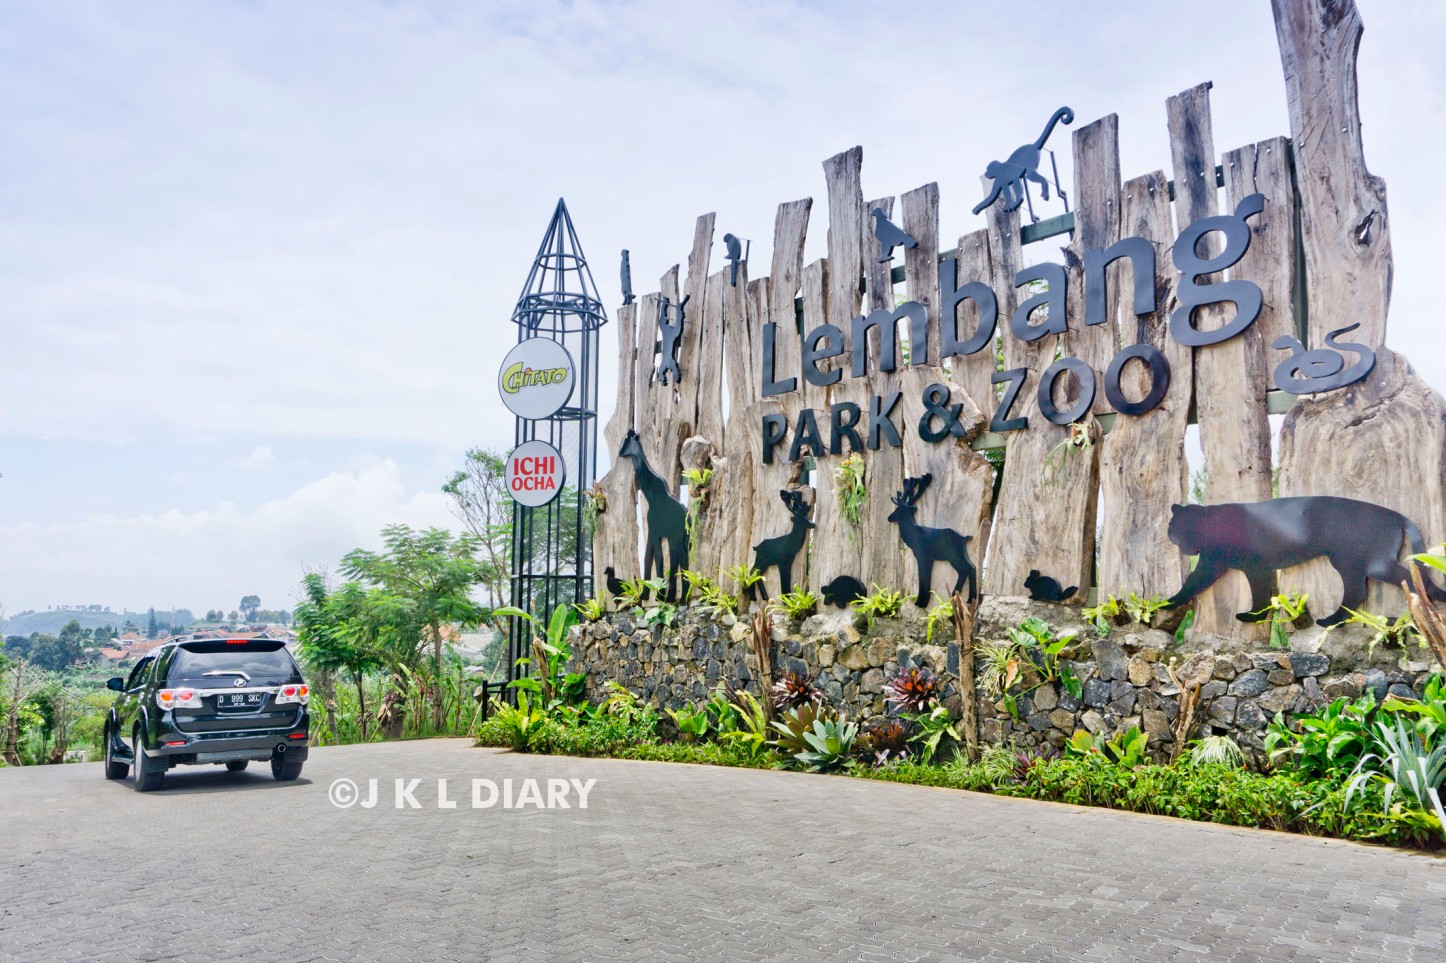 Foto Lembang Park and Zoo oleh JKLDIARY